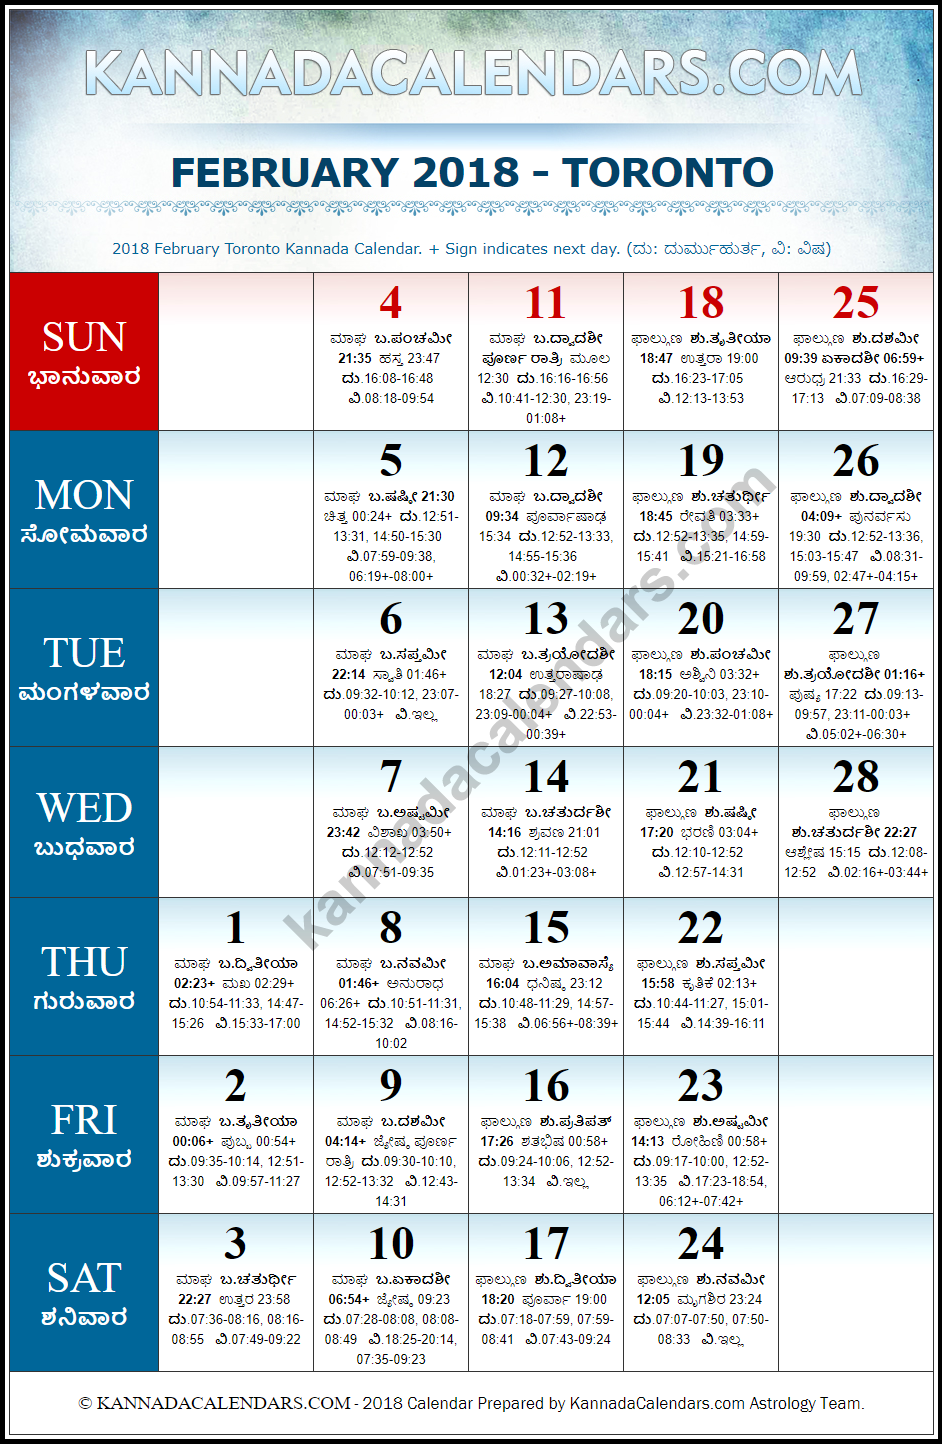 February 2018 Kannada Calendar for Toronto, Canada